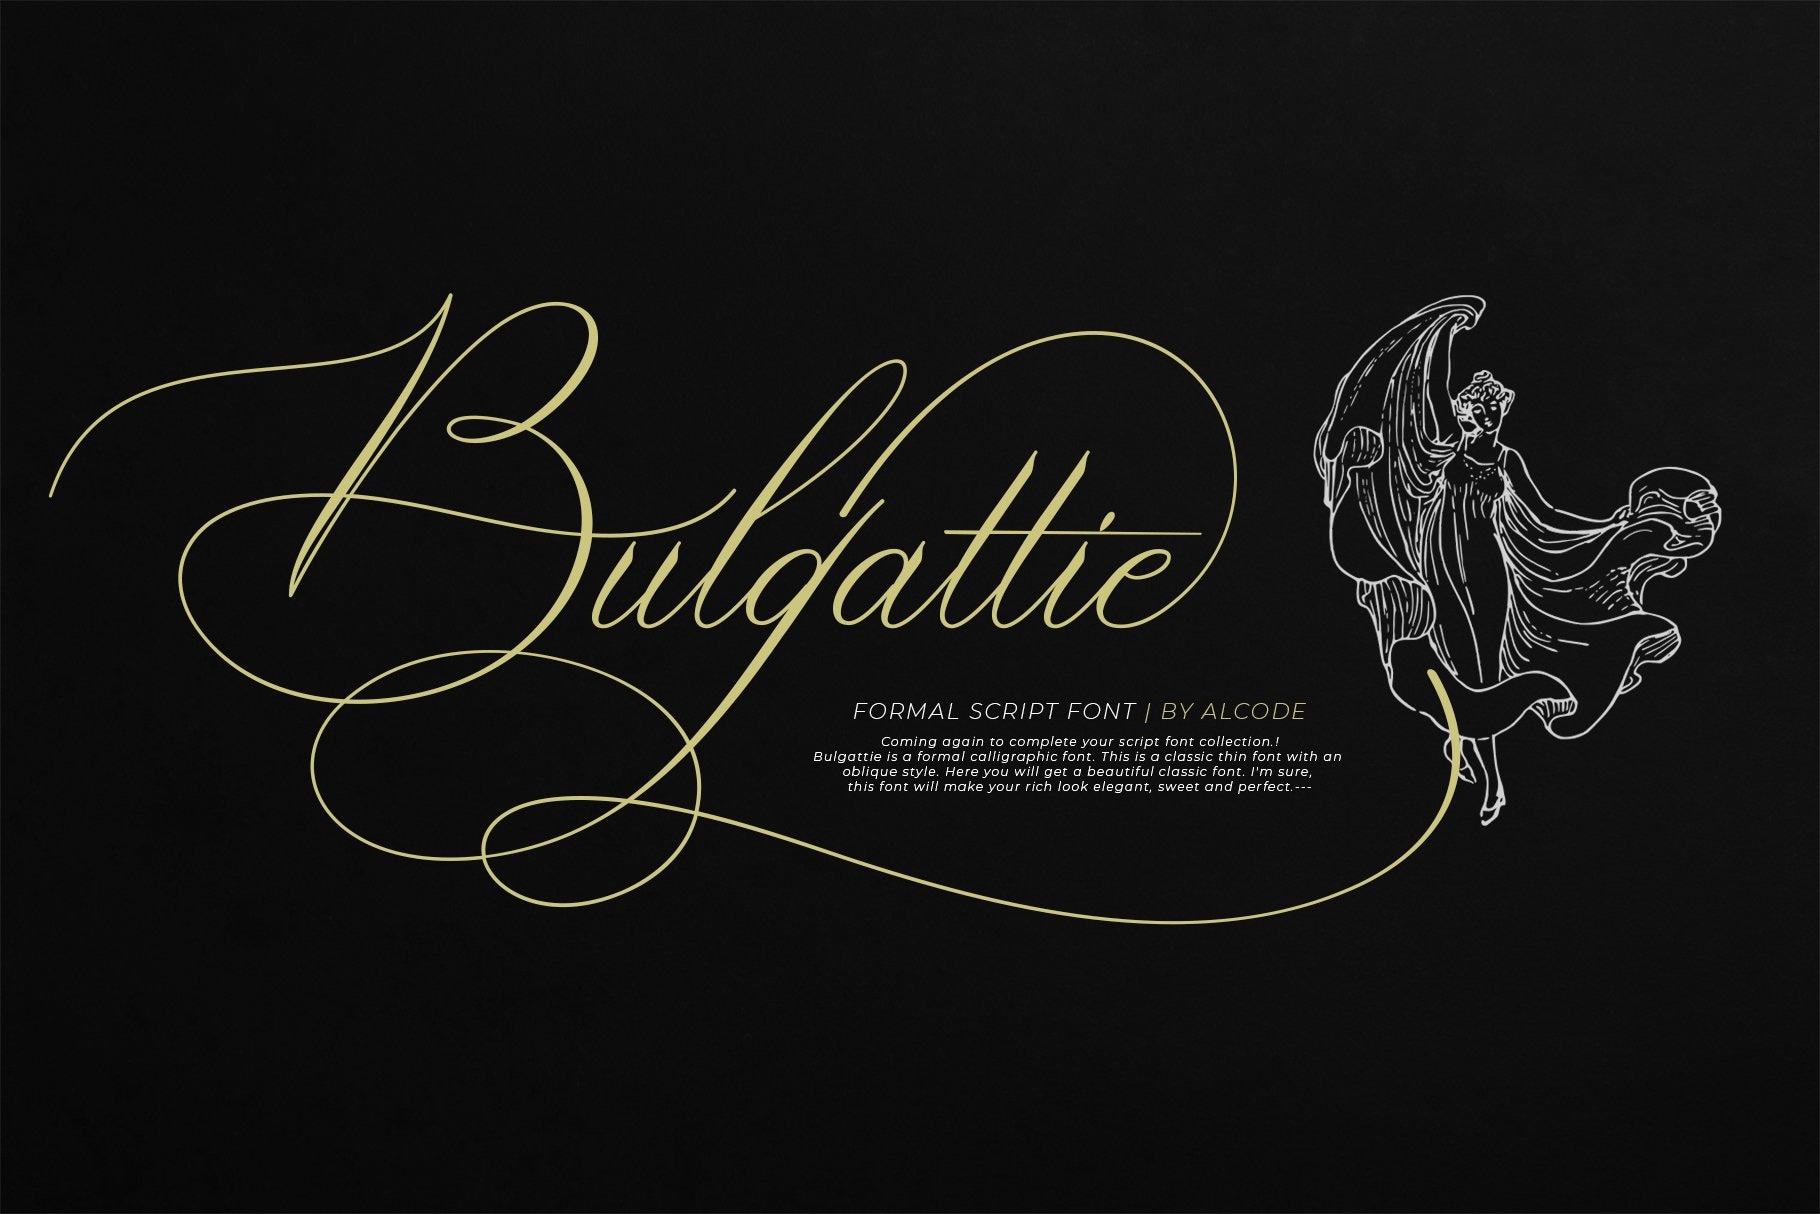 Пример шрифта Bulgattie